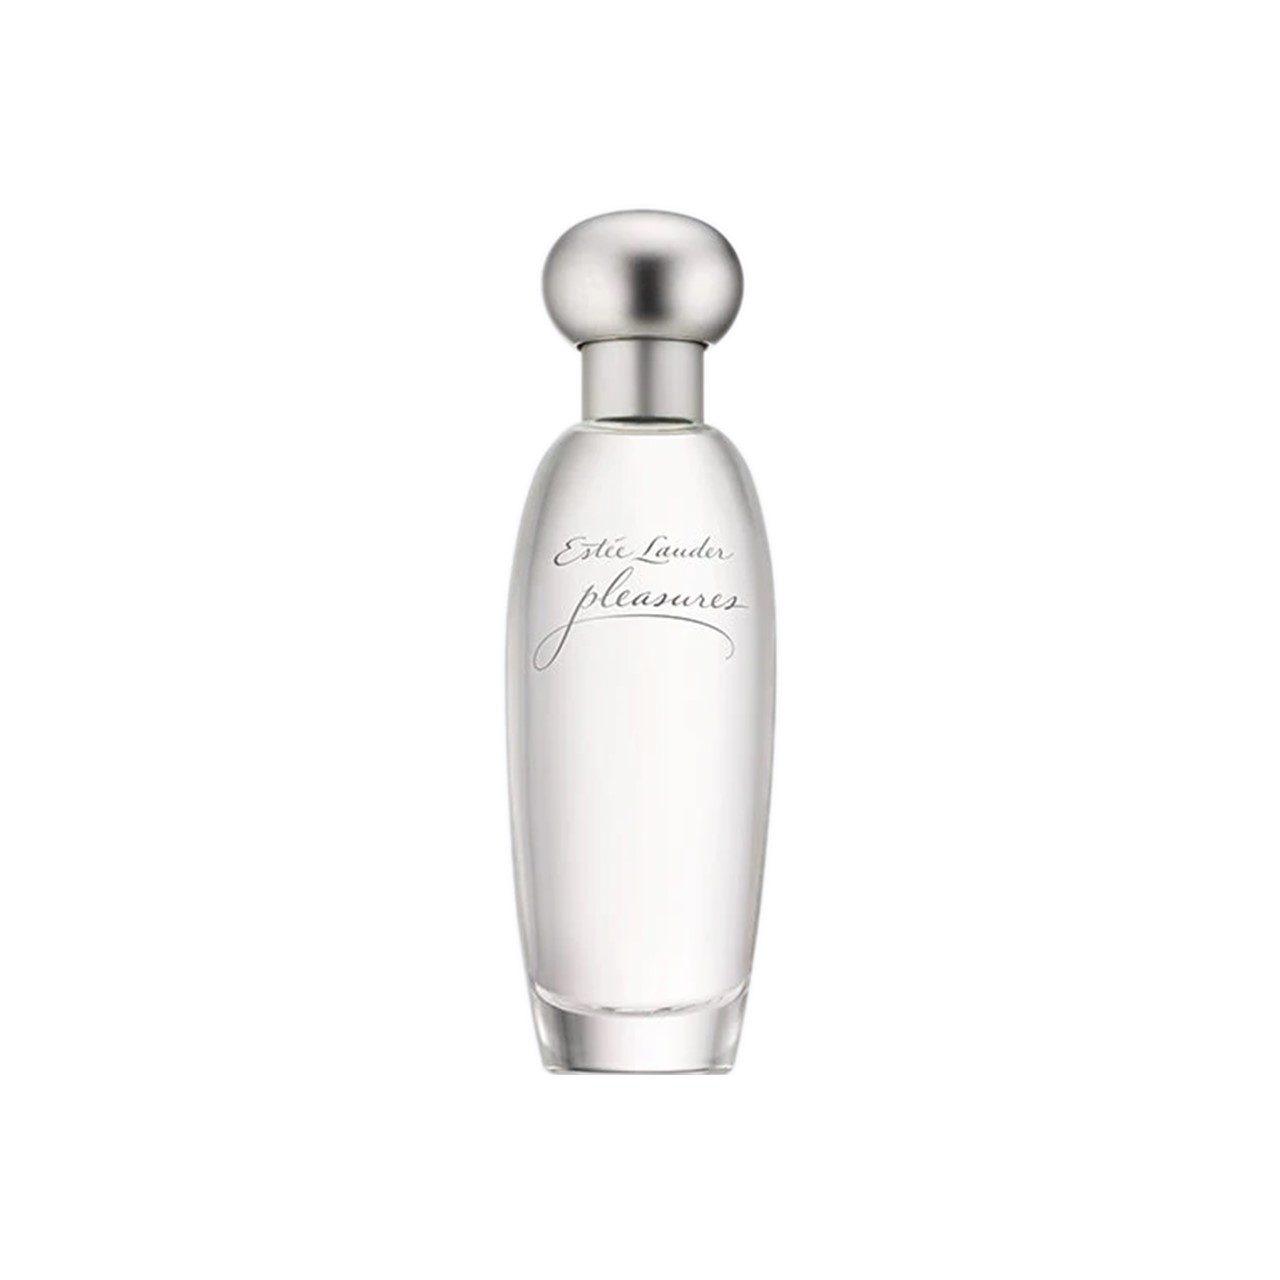 Estée Lauder Pleasures Eau de Parfum 100ml (3.4fl oz)